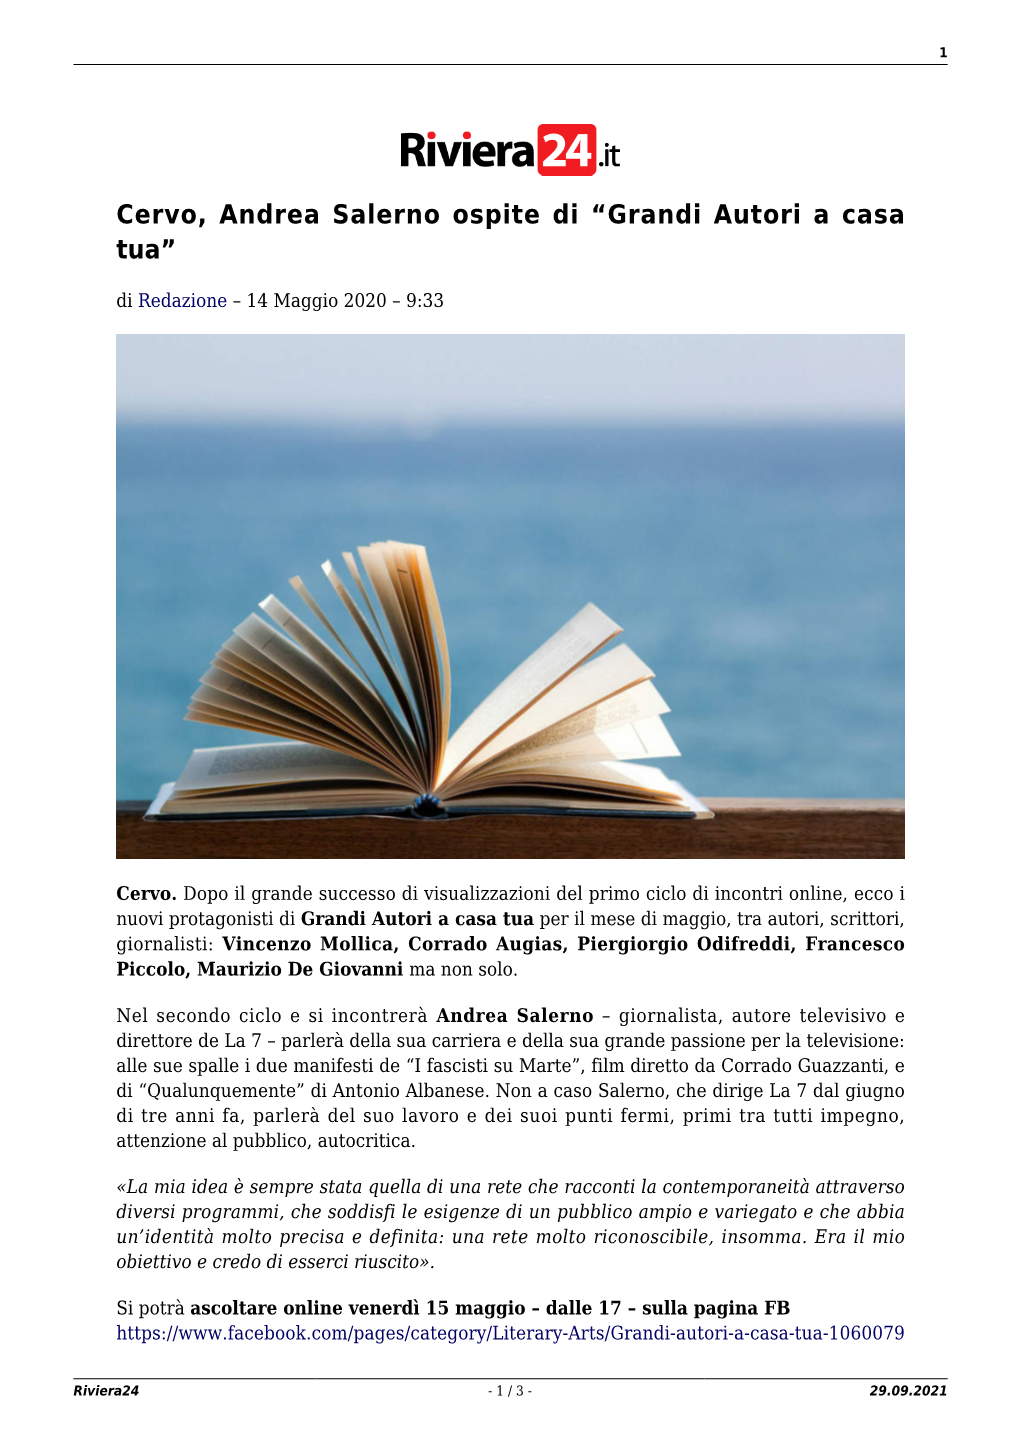 Cervo, Andrea Salerno Ospite Di “Grandi Autori a Casa Tua”